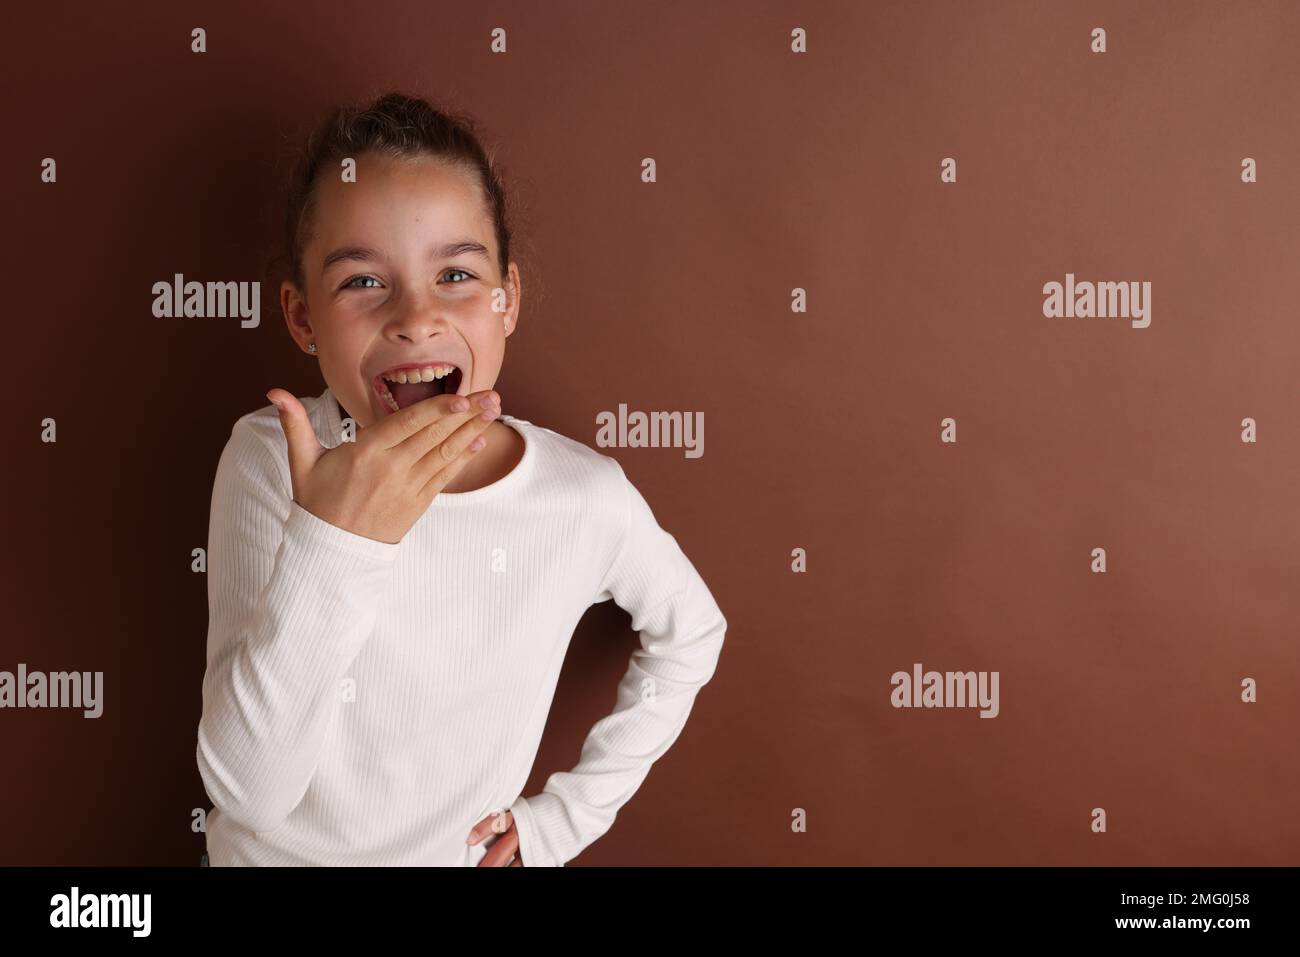 Kleines emotionales Teenager-Mädchen in Weiß, 11 Jahre alt, 12 Jahre alt, auf isoliertem braunen Schokoladen-Hintergrund. Stockfoto